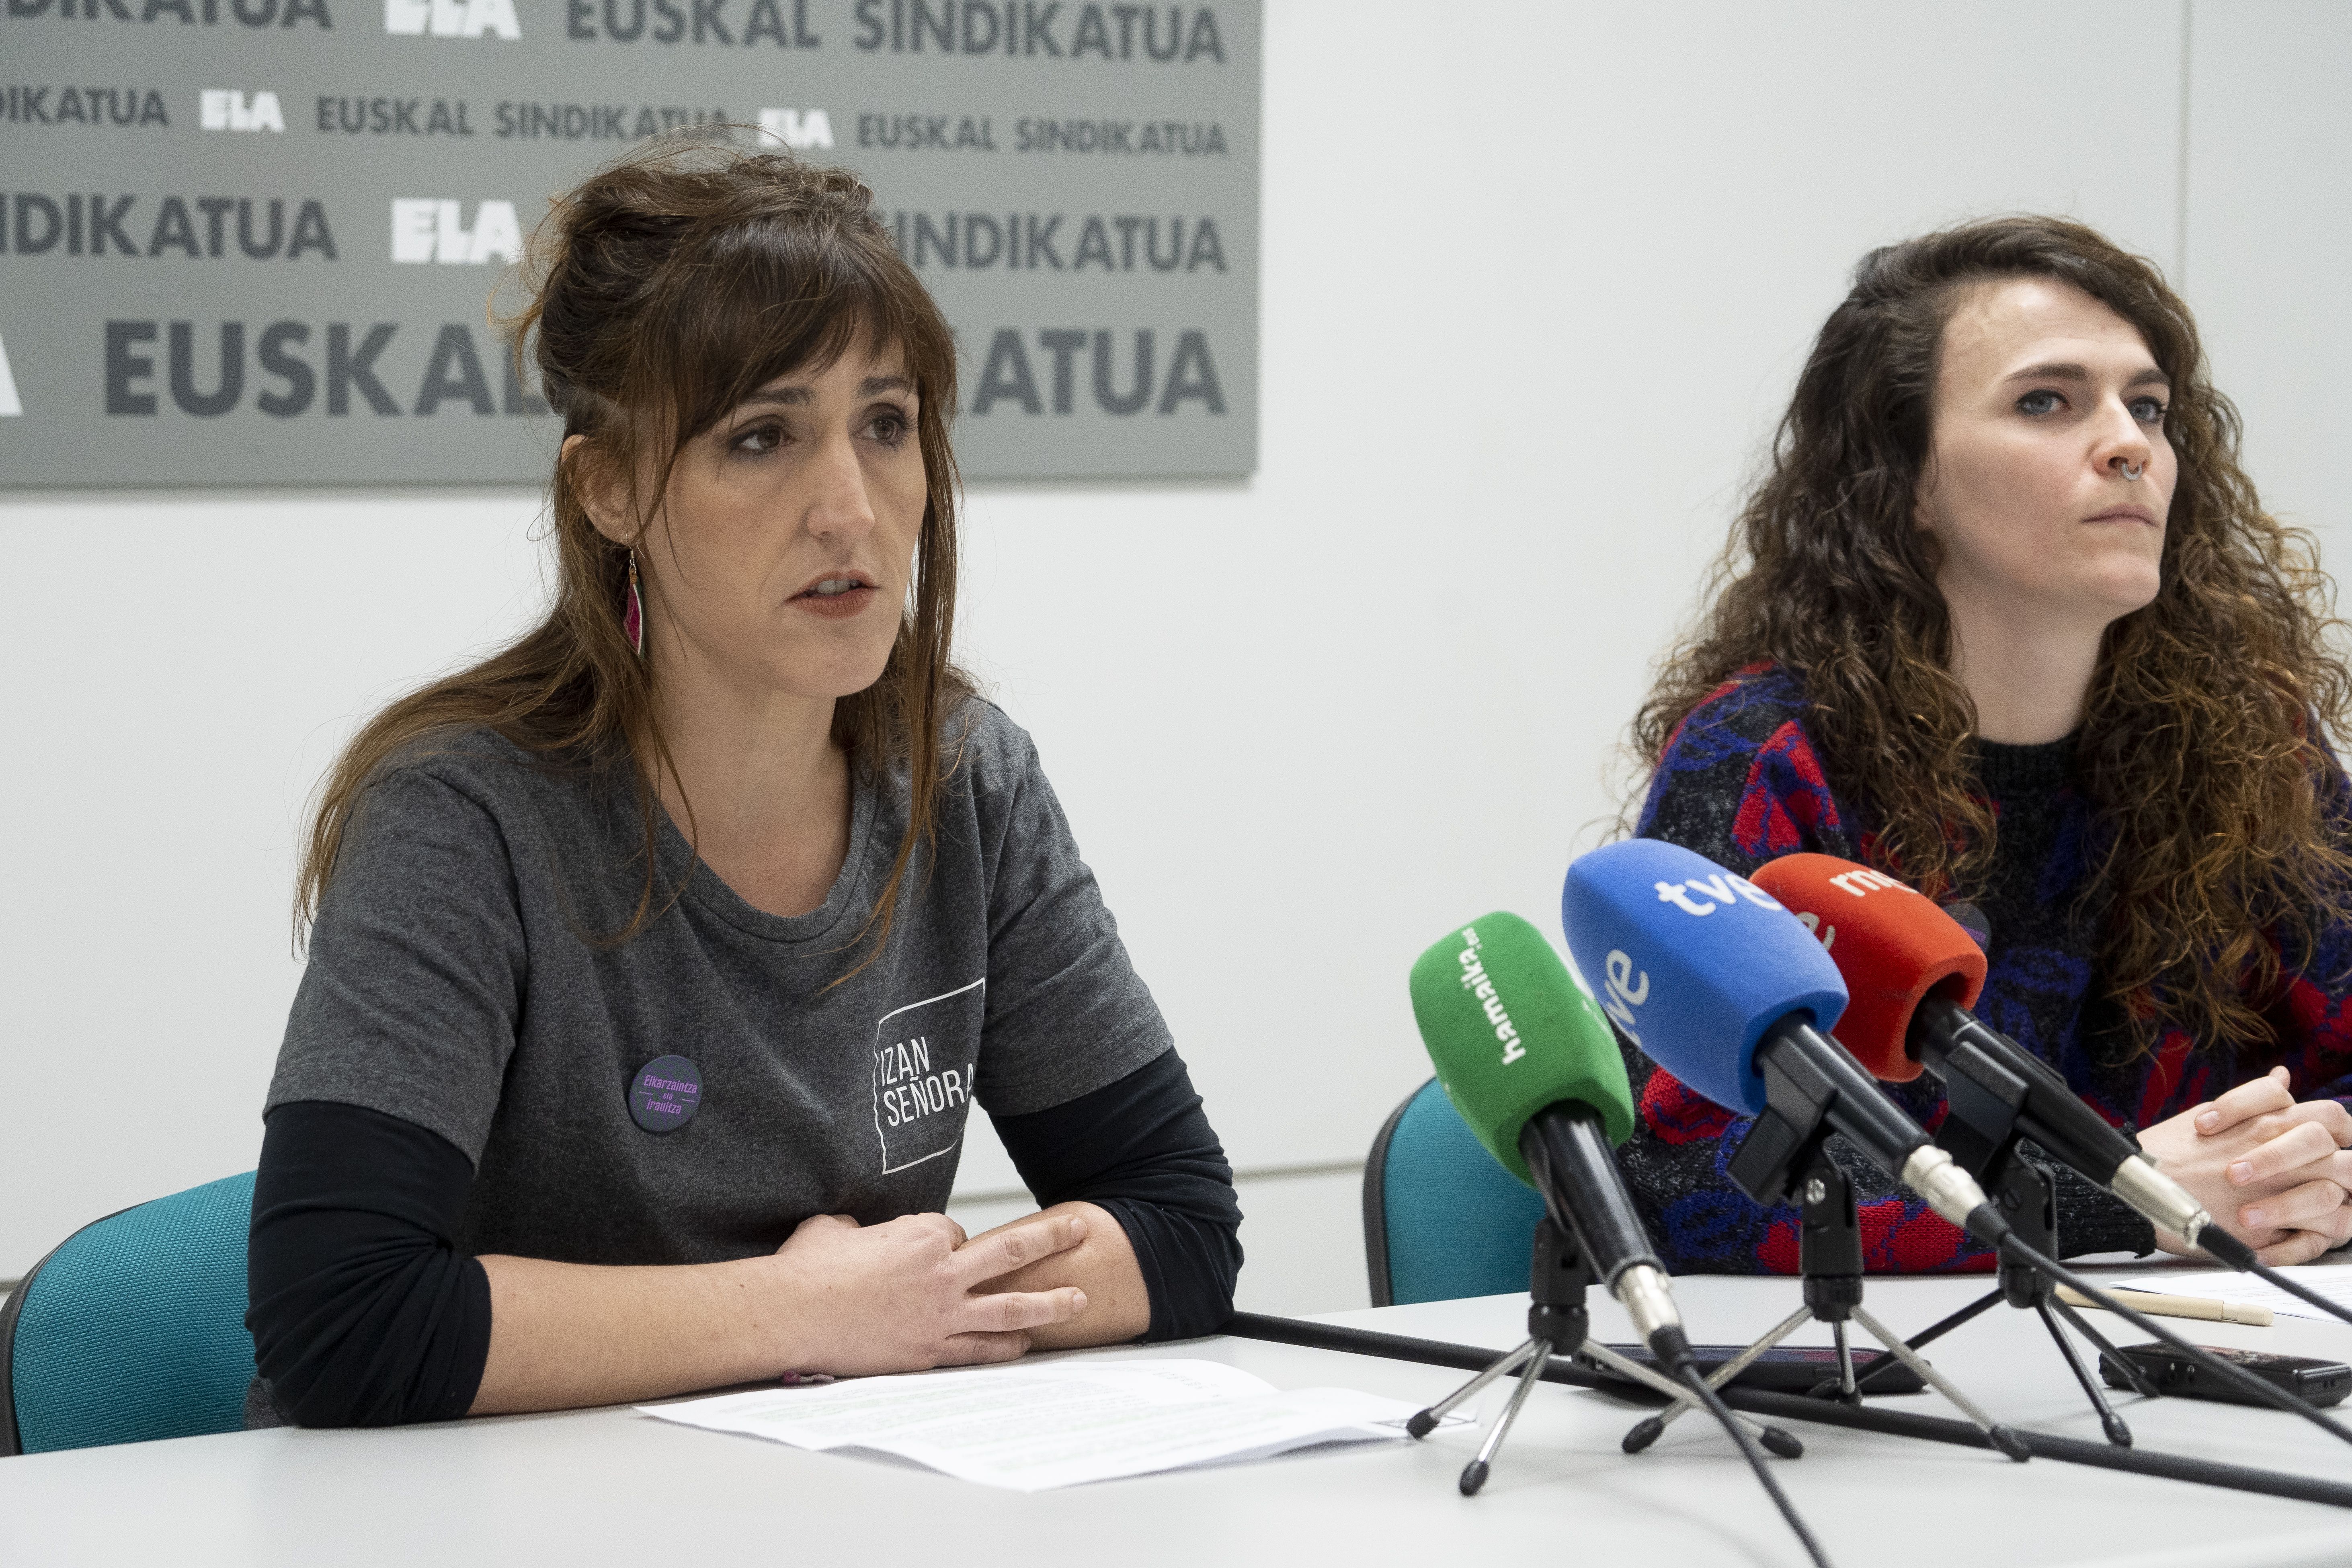 ELAko Silvia Guillen eta Saioa Urriza, gaur, sindikatuak Iruñean duen egoitzan. IÑIGO URIZ / FOKU